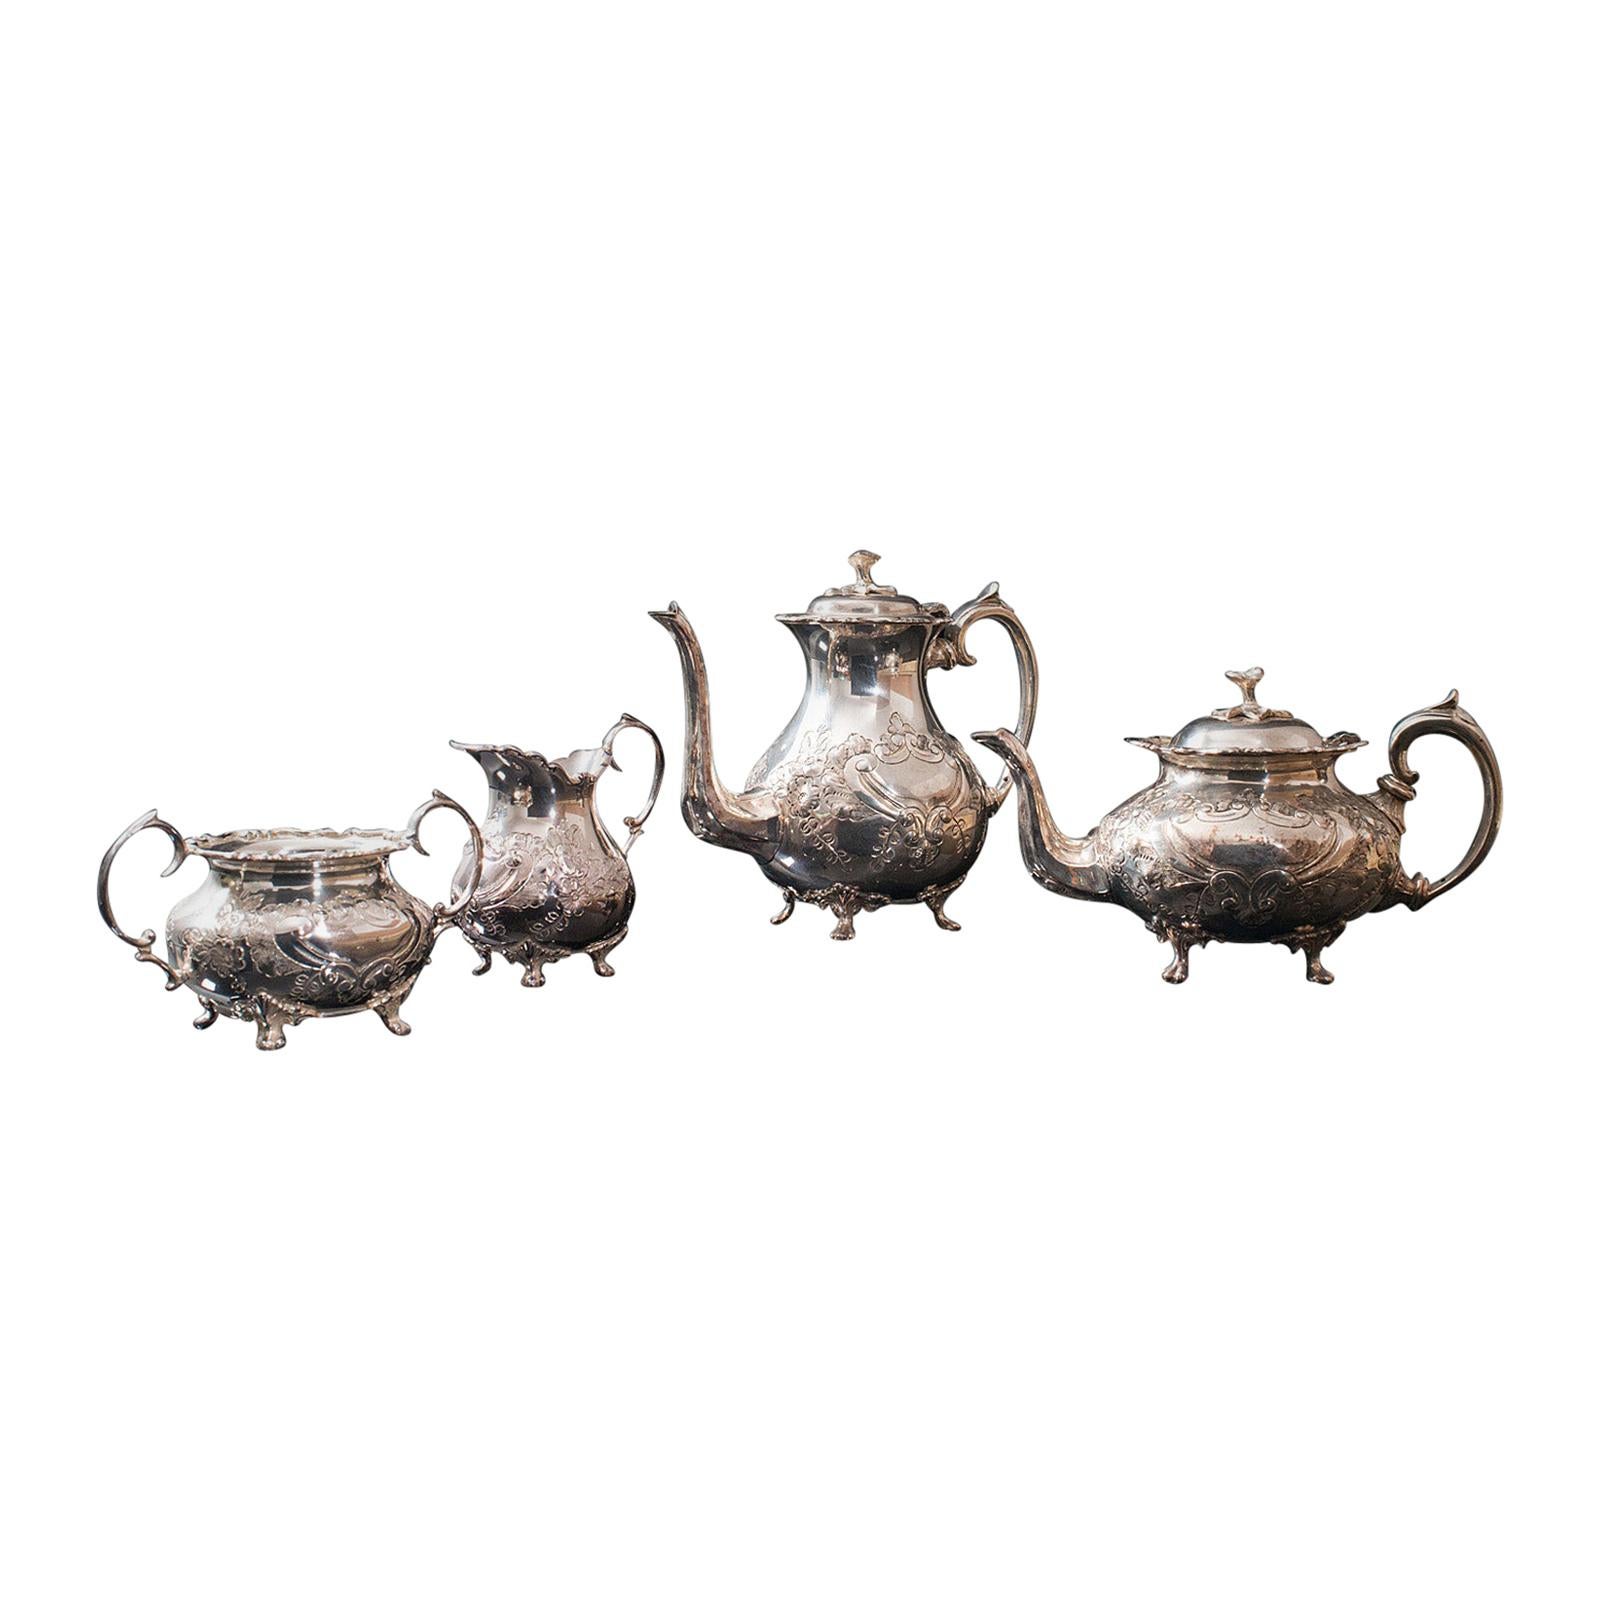 Service à thé ancien anglais, en métal argenté, ciselé à la main, théière, pichet, vers 1900